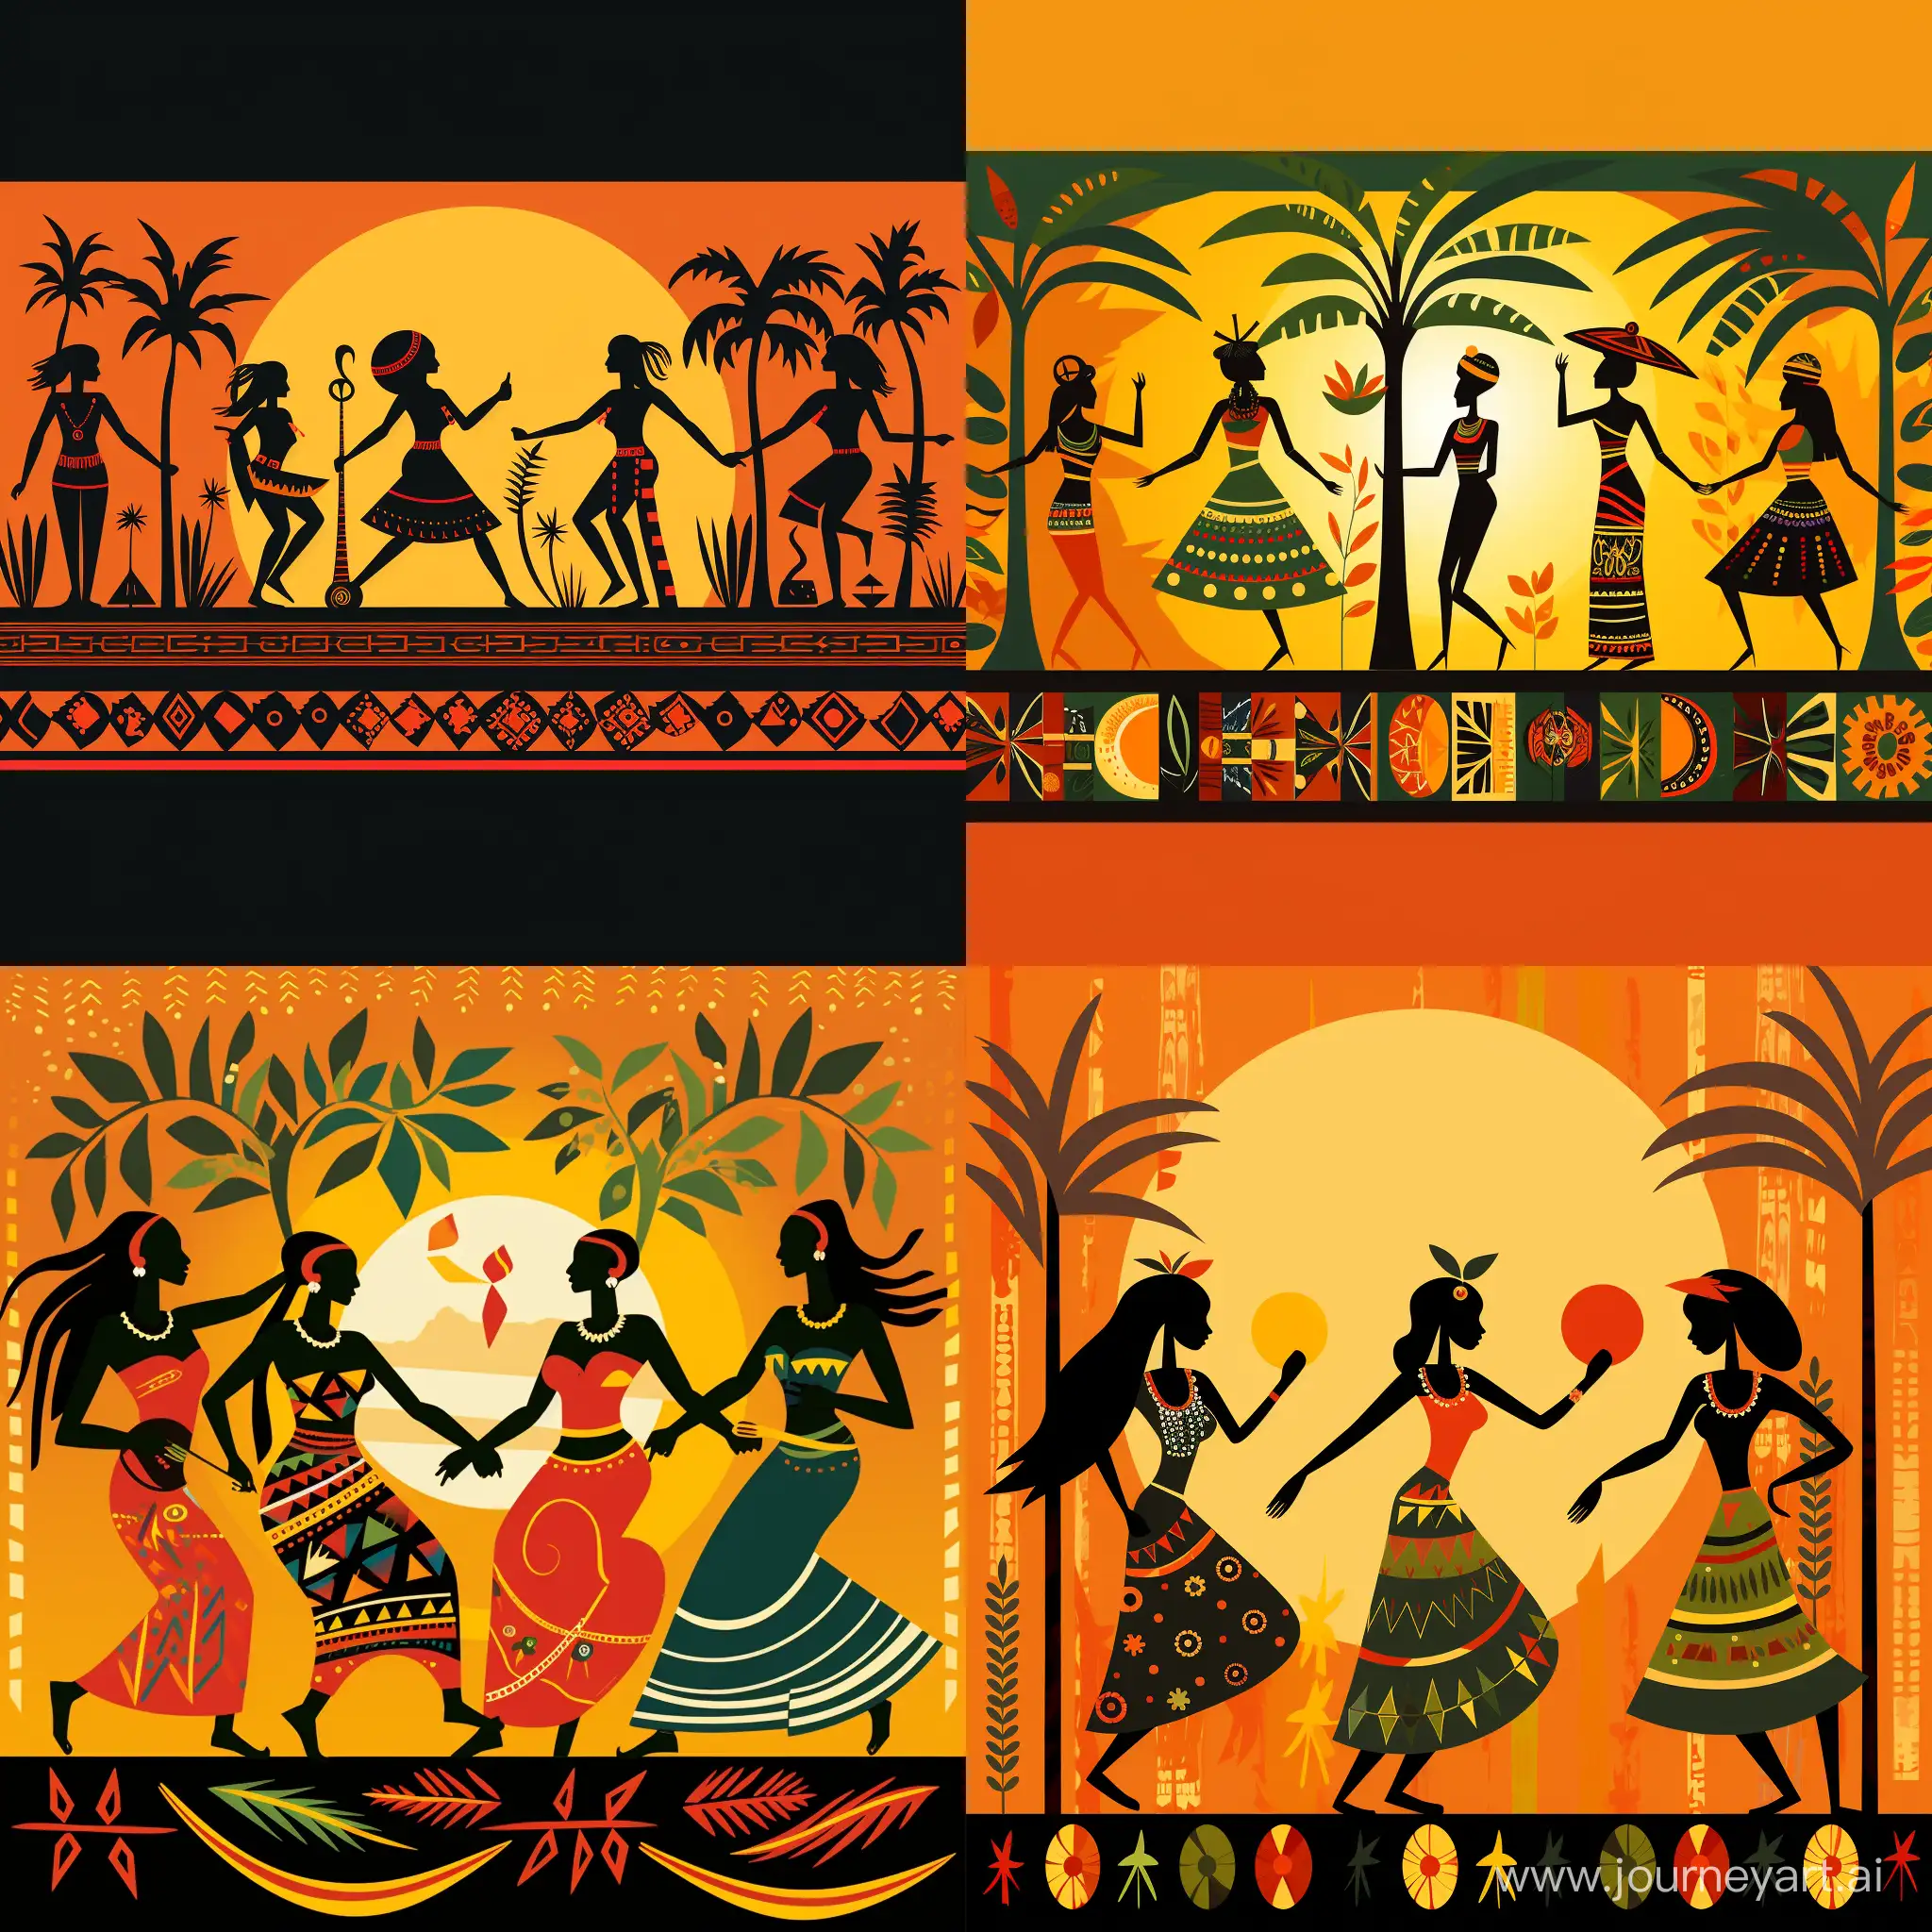 три горизонтальные дорожки...первая- пальмы,попугаи.  Вторая, средняя, танцуют мужчины и женщины  этнический африканский племенной танец с там-тамами( барабаны). в коротких из тростника юбках. Национальная одежда для танцаю  У женщин в руках бубны...
Нижняя дорожка горизонтальная- этнические графические знаки и узоры.                      Все в солнечных тонах. Веселье, радость...